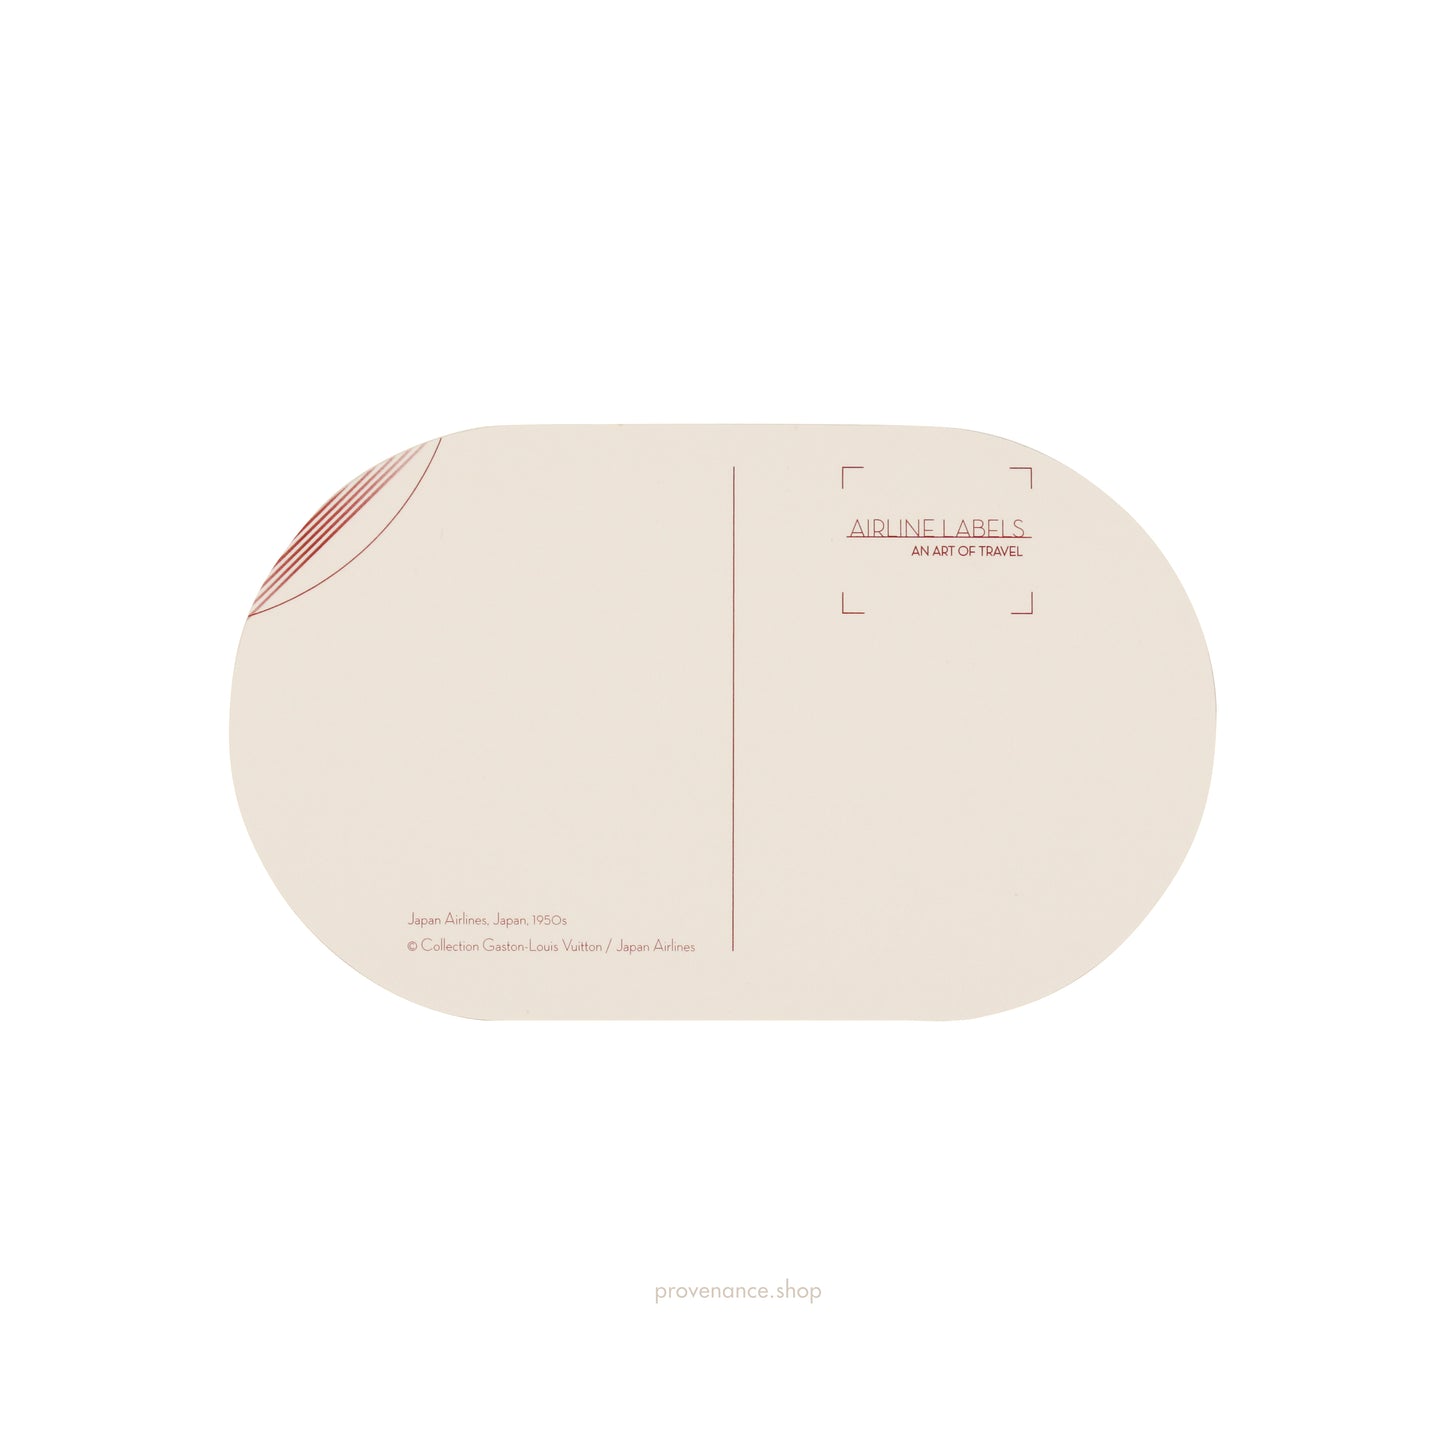 Louis Vuitton Airline Label Postcard - JAPAN AIRLINES